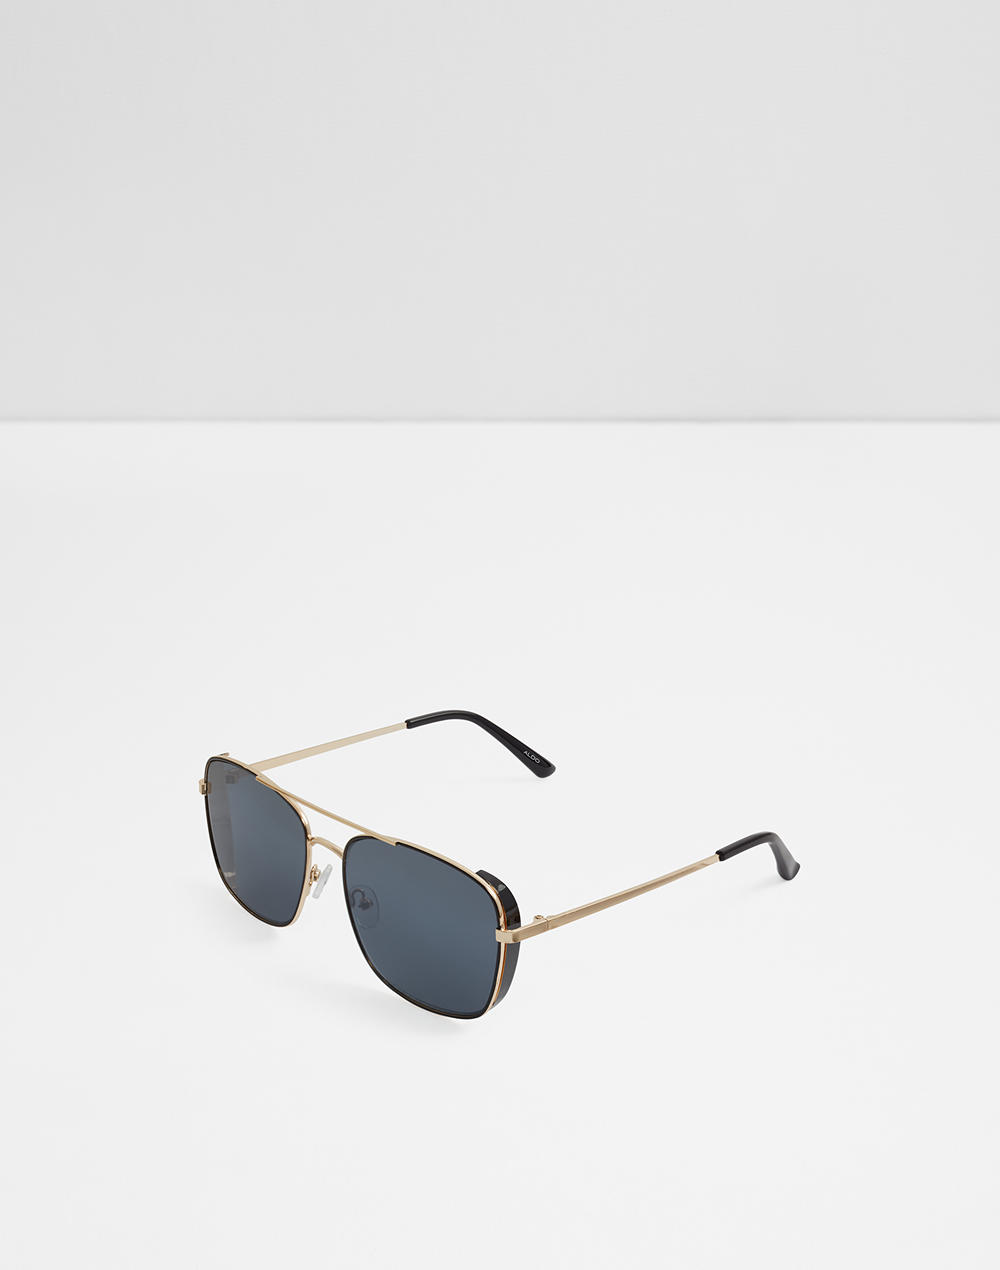 Sunglasses | Aldoshoes.com US